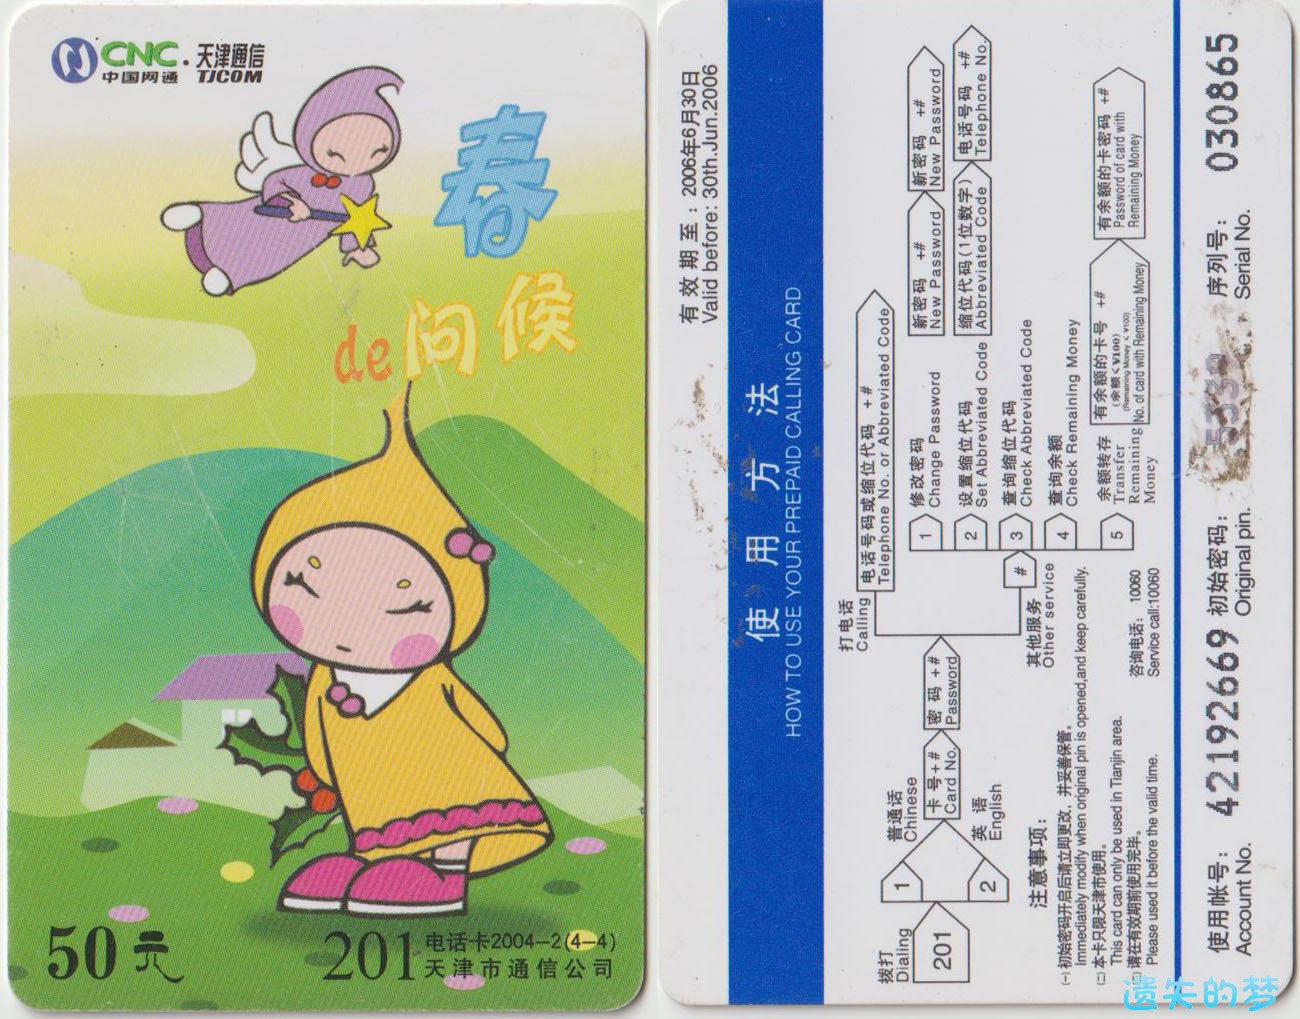 201电话卡2004-2(4-4).jpg